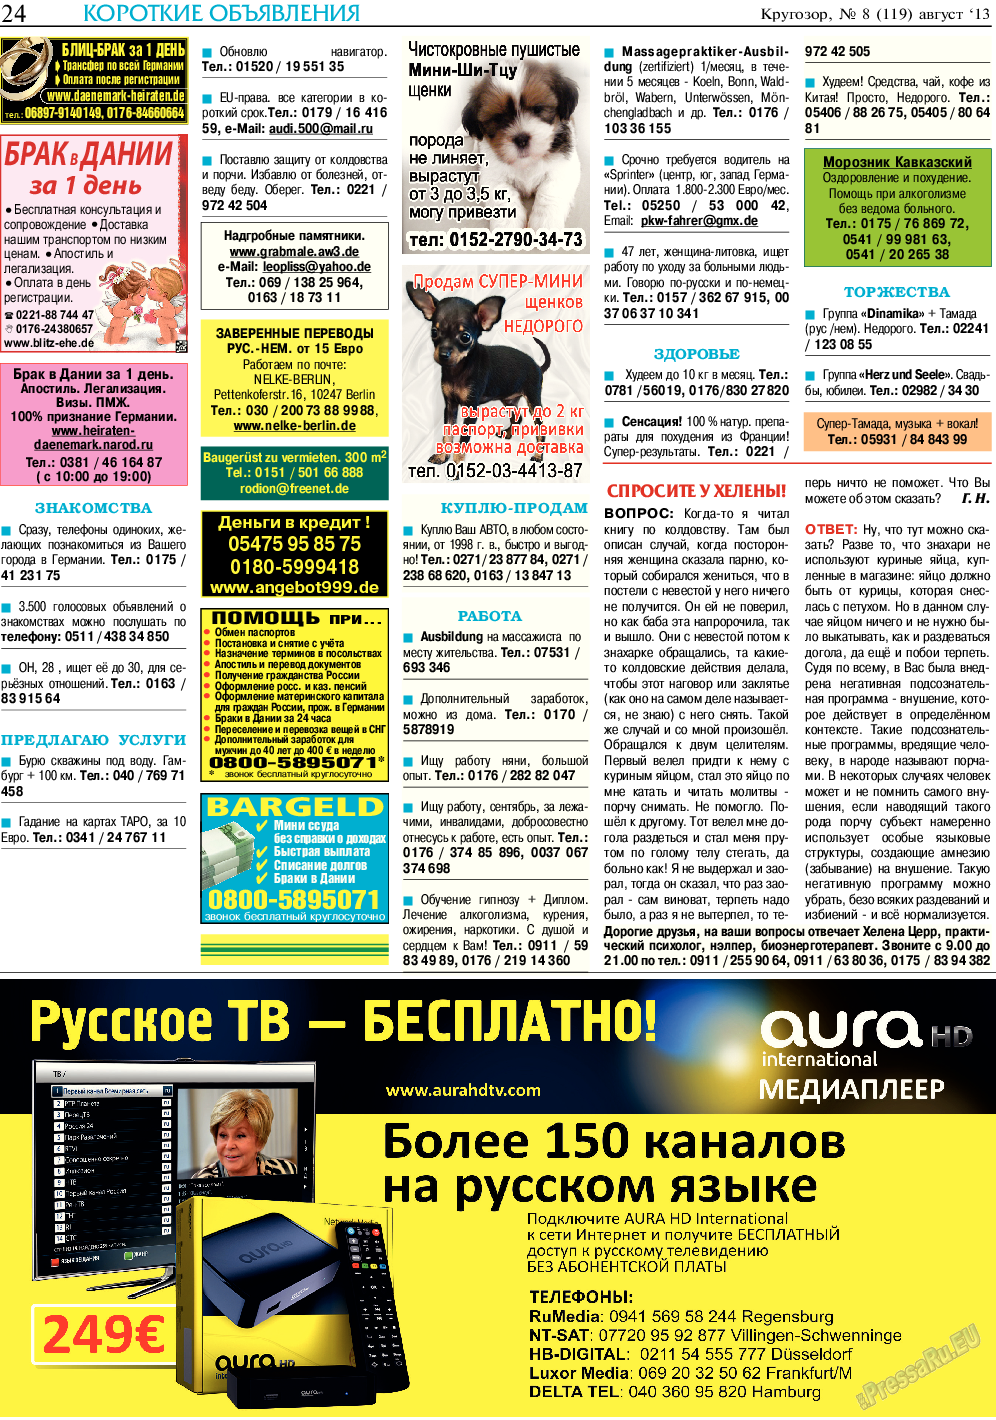 Кругозор (газета). 2013 год, номер 8, стр. 24